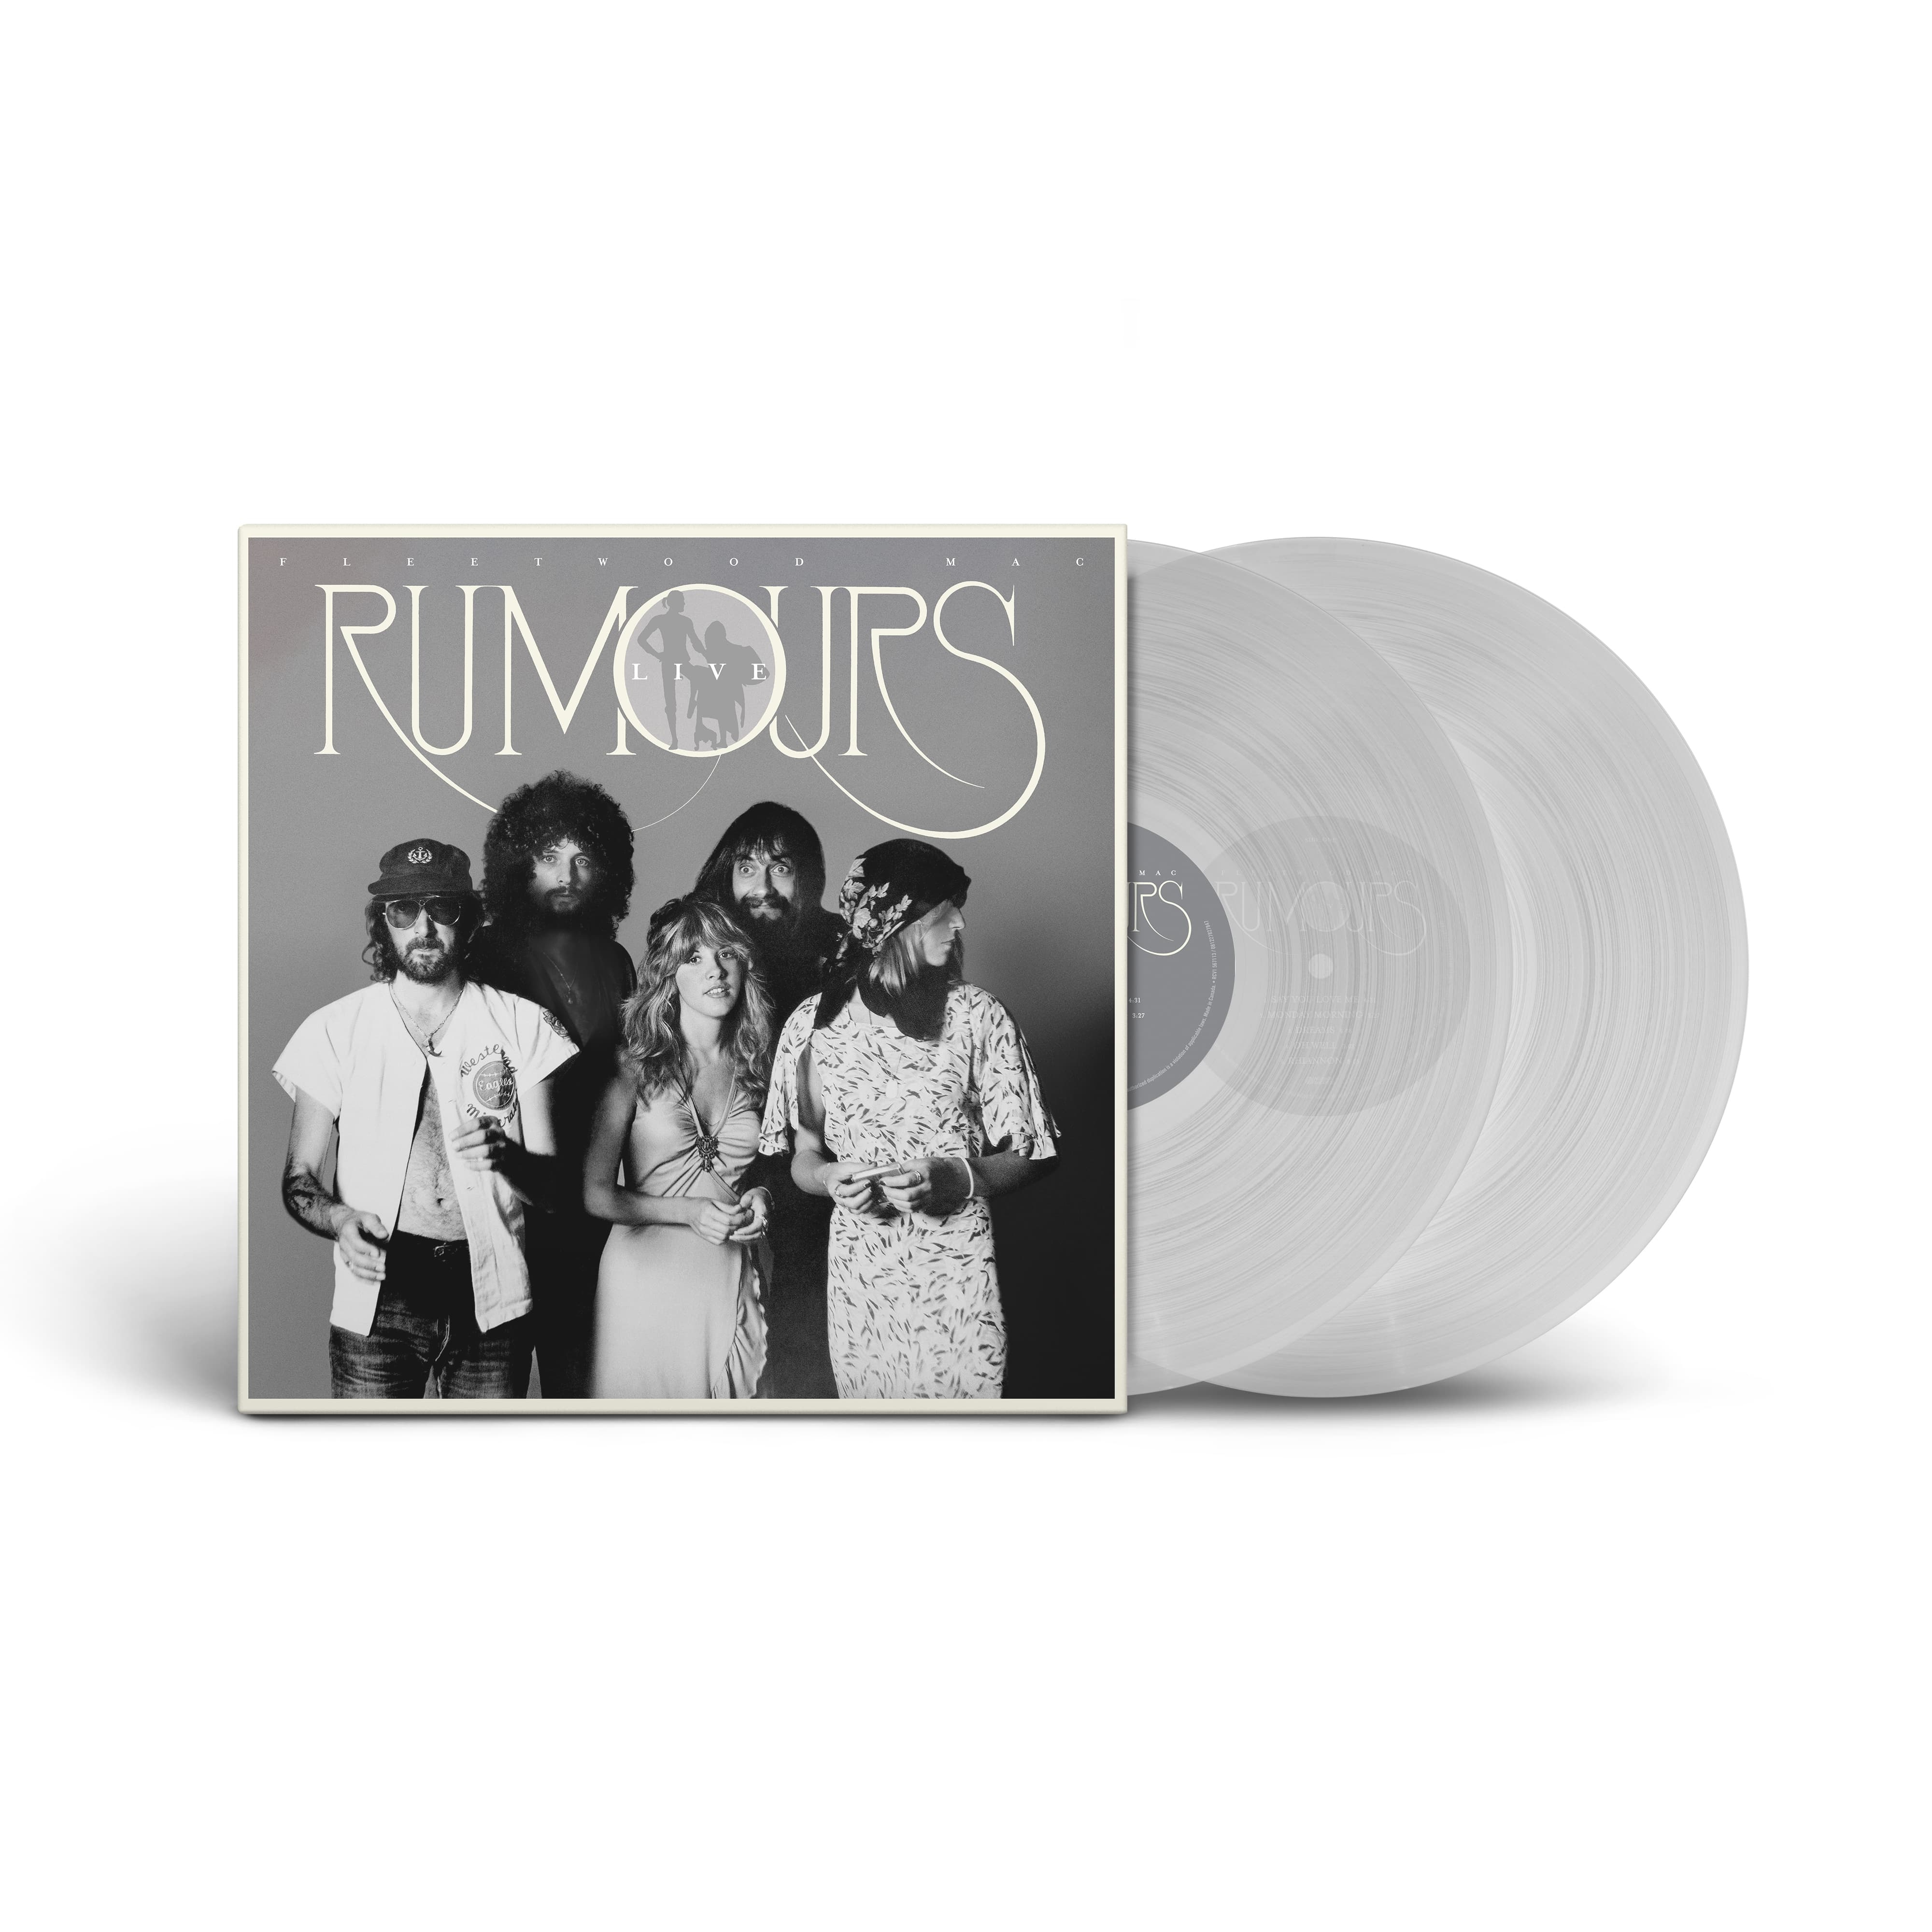 RUMOURS LIVE '77 - 2 LP TRASPARENT VINYL LTD. ED.